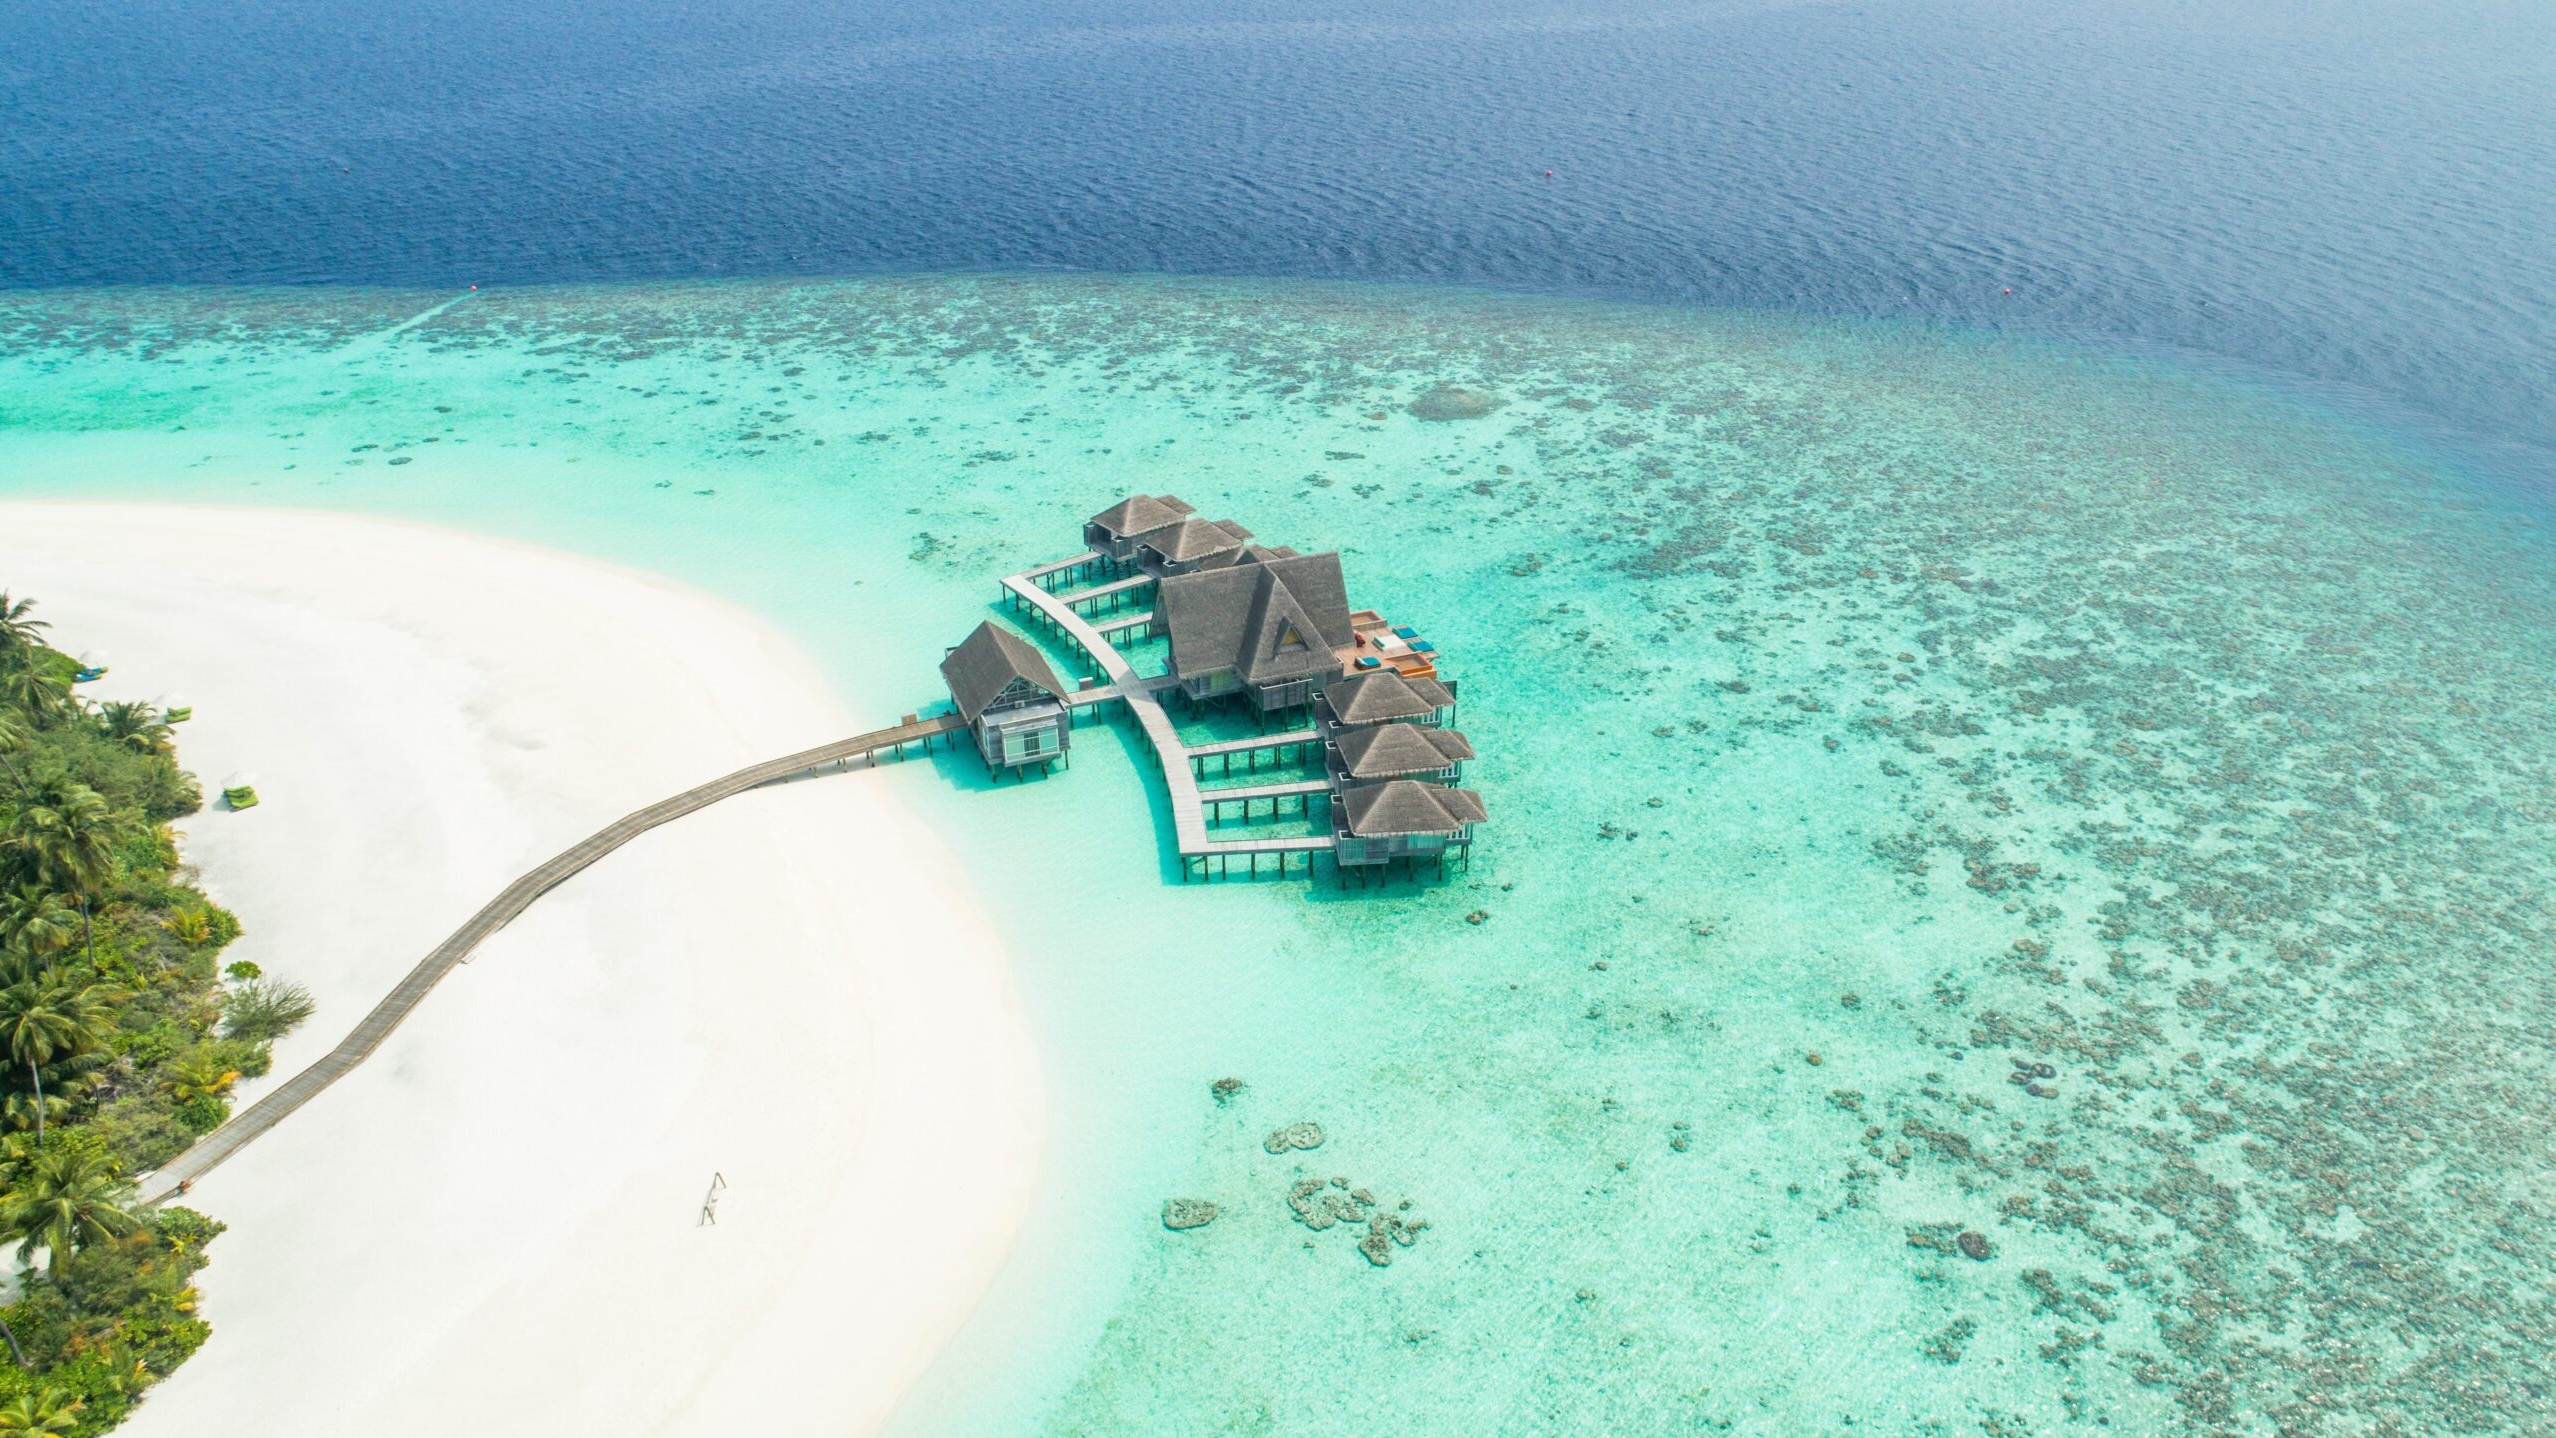 Мальдивы могут полностью утонуть уже через 80 лет